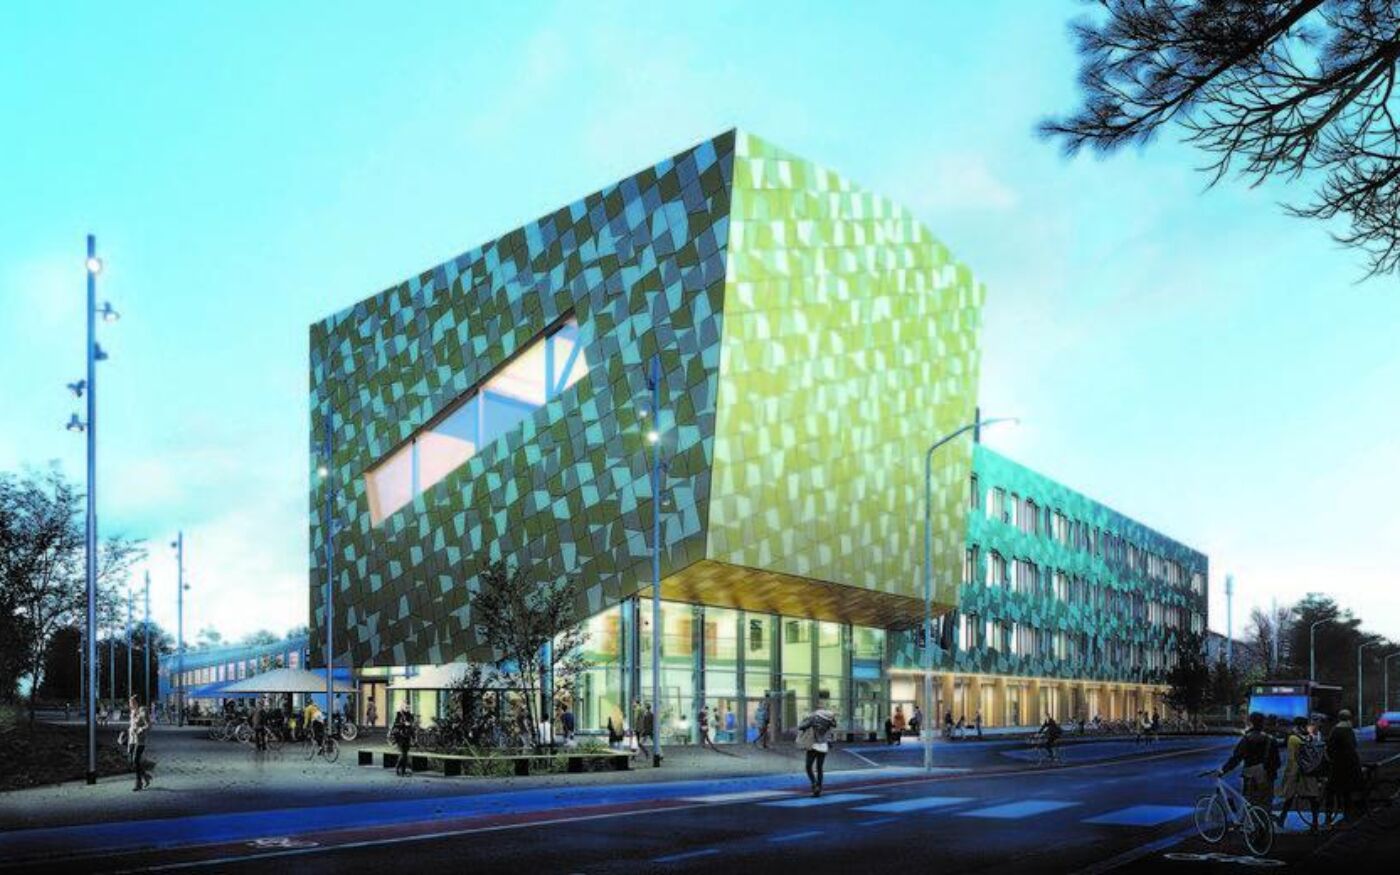 Stort firkantet bygg med avlangt sidebygning, i grønt og blått. Illustrasjon.